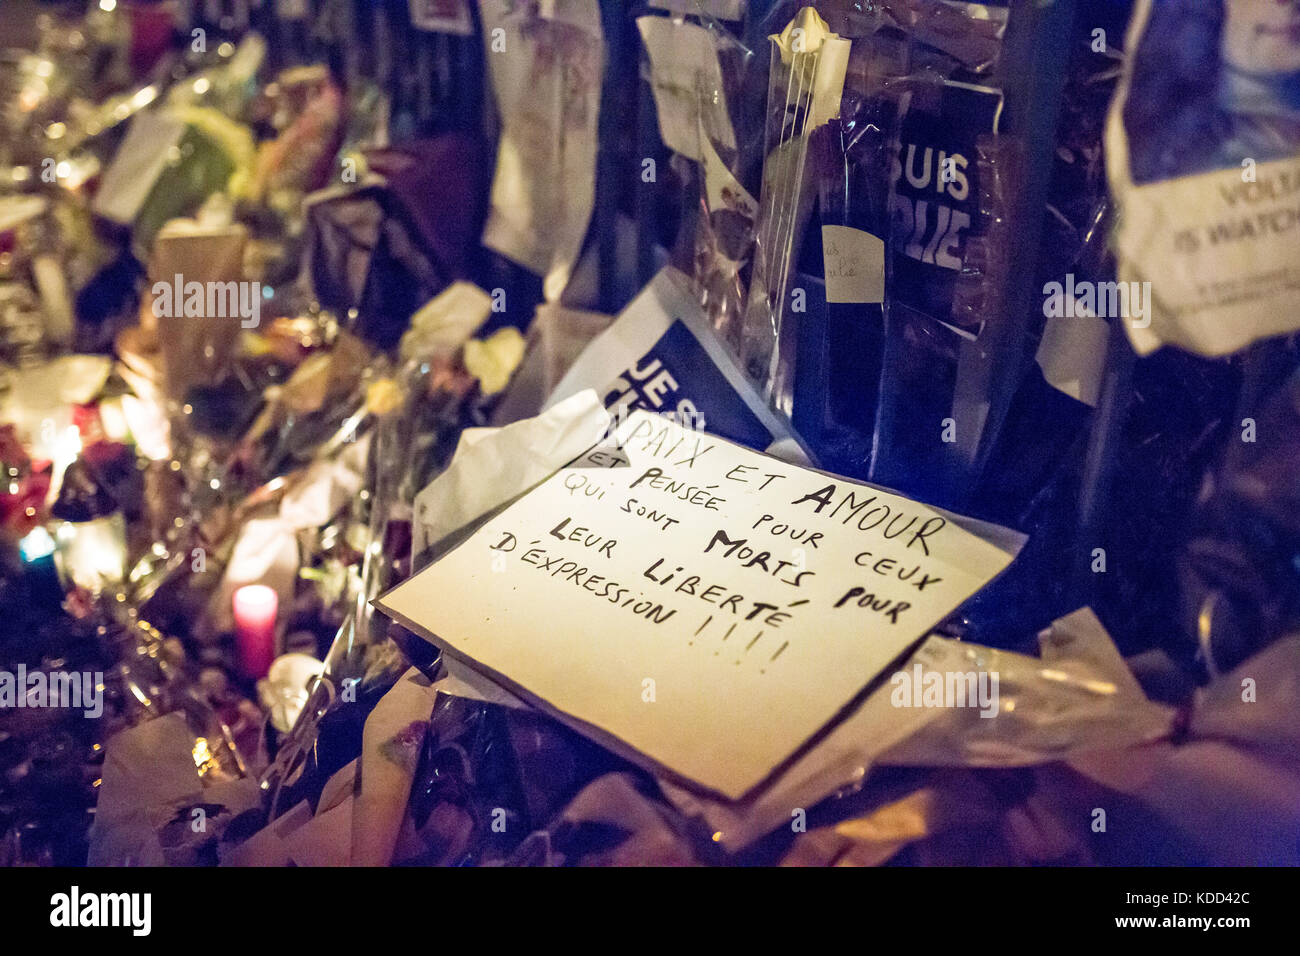 Paix et amour, de paz y de amor sobre un proyecto de ley, homenaje a las víctimas de la matanza de Charlie Hebdo en París el 7 de enero de 2015. Foto de stock